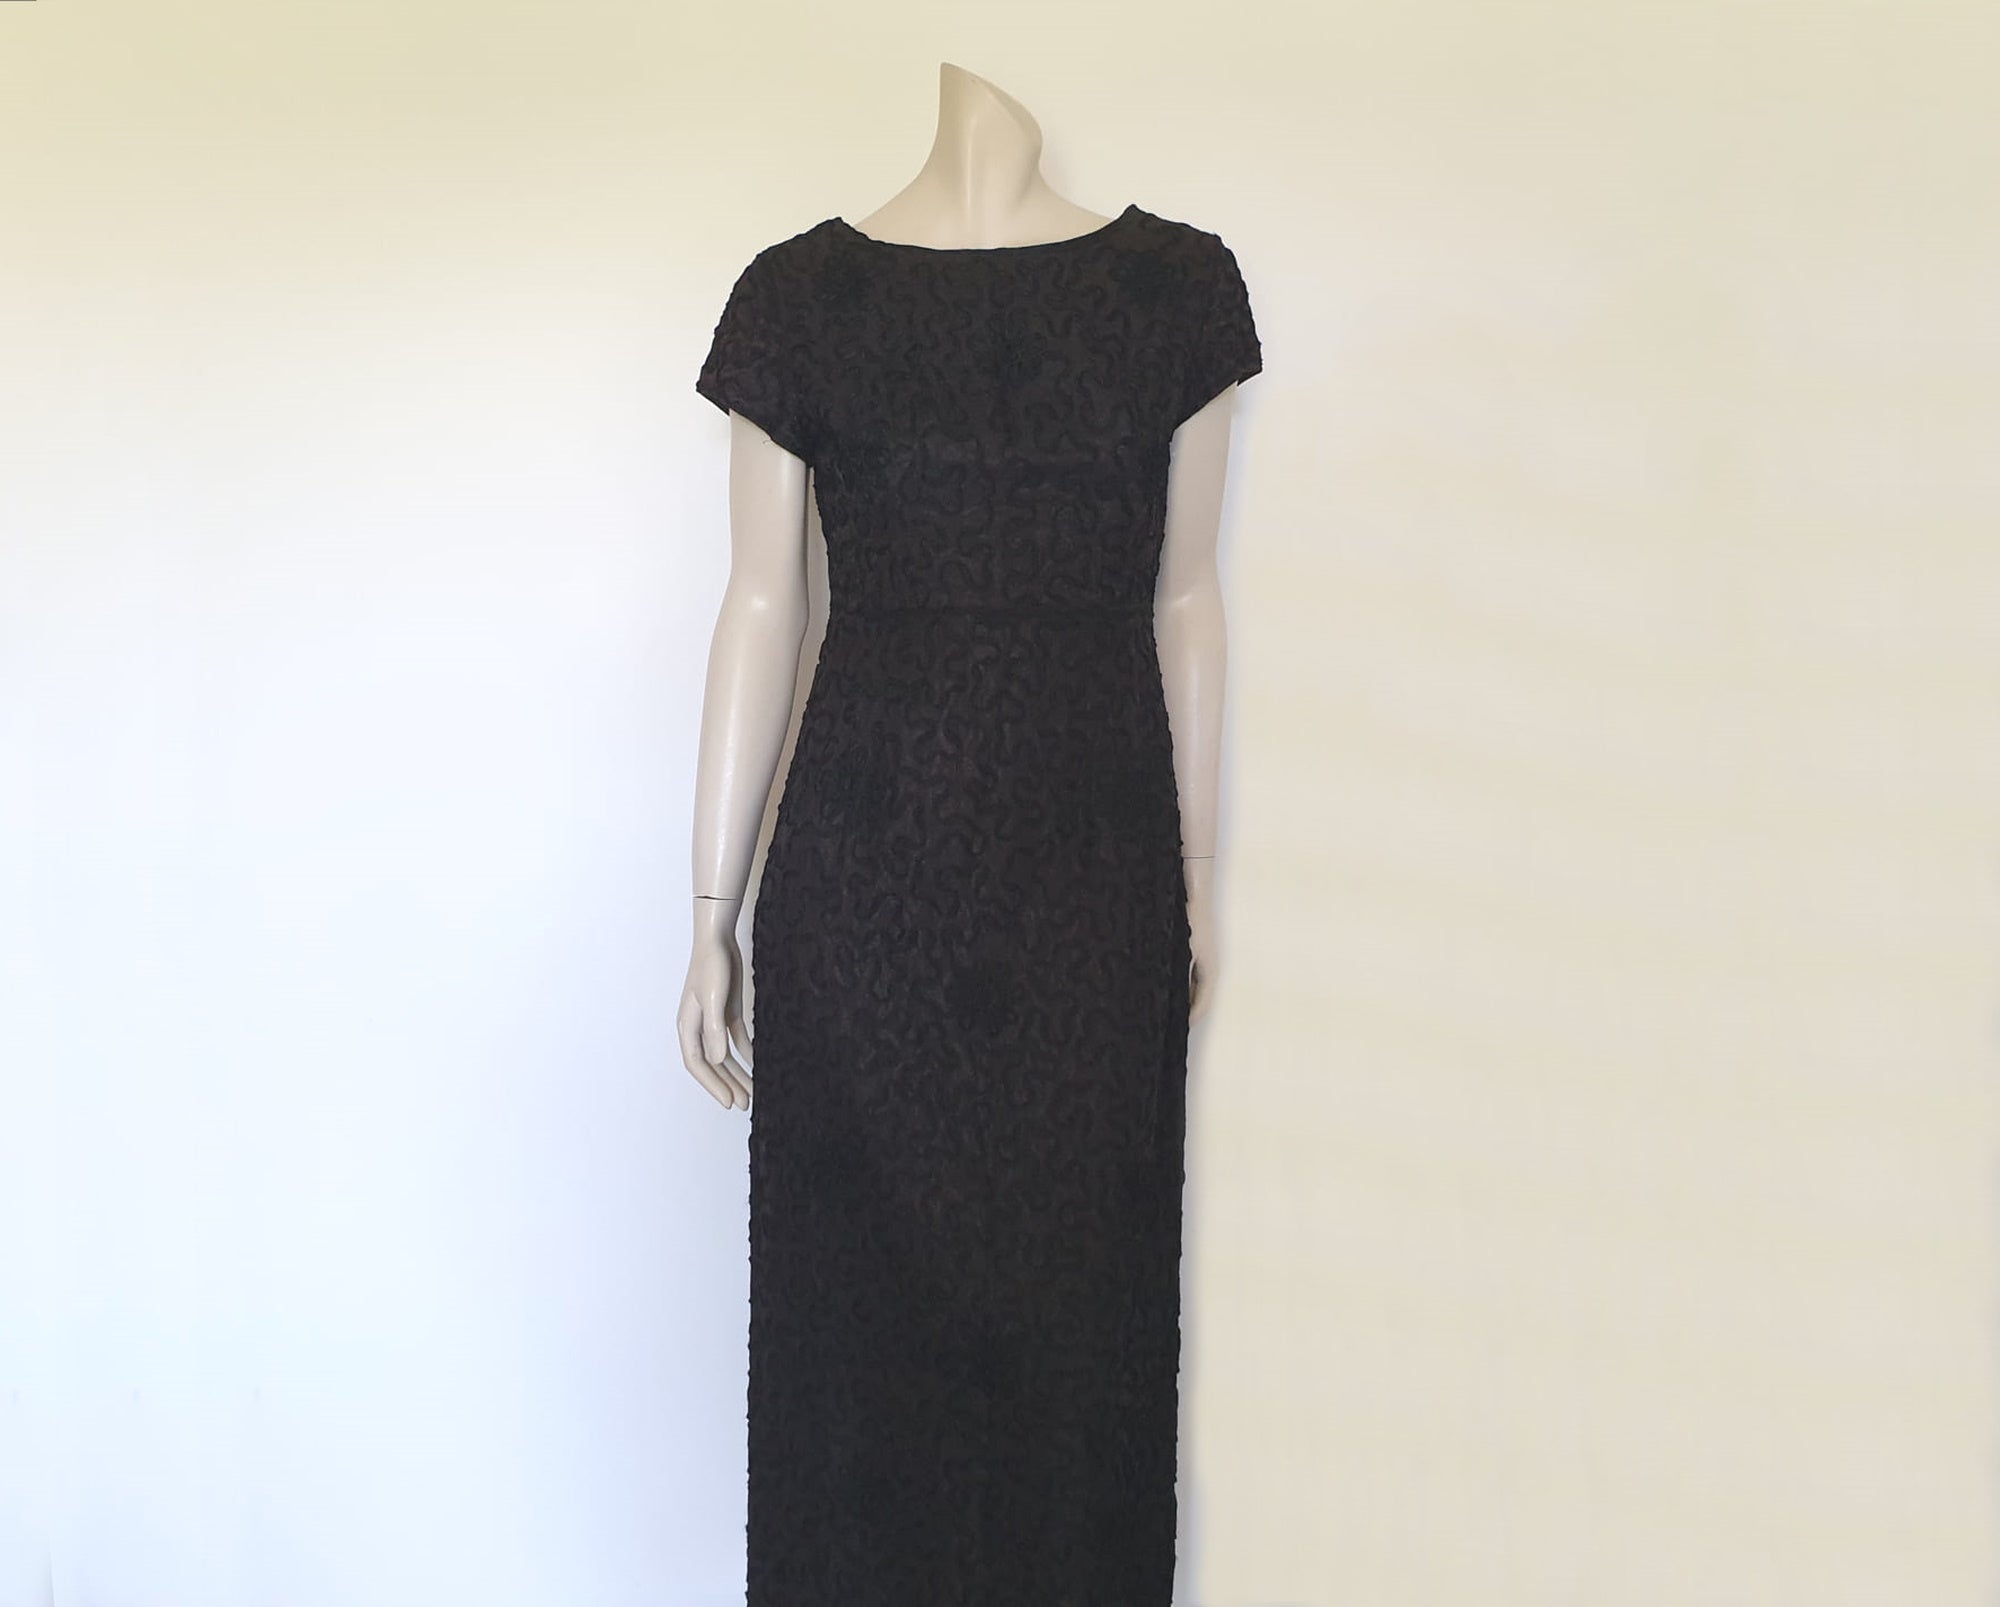 Black Ribbon Lace Evening Dress - M